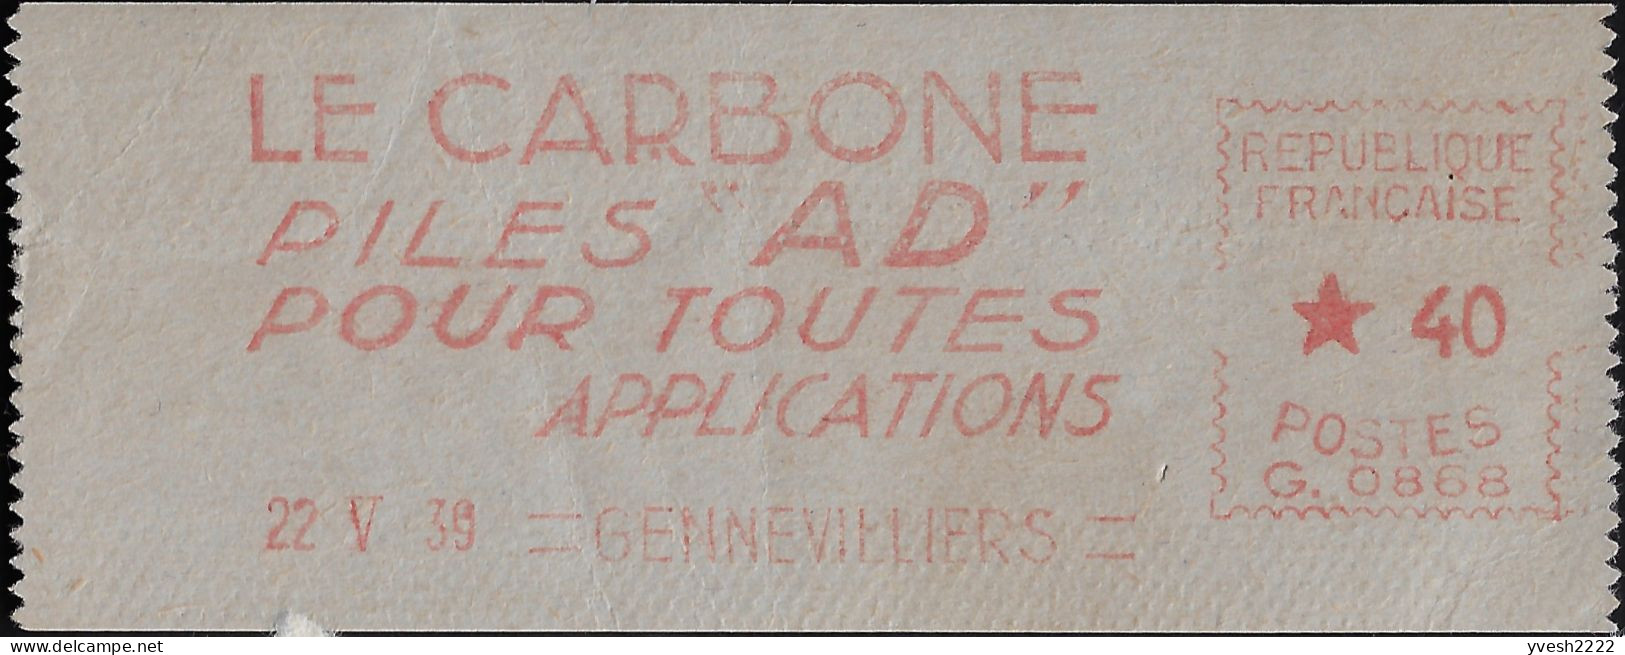 France 1939. Empreinte De Machine à Affranchir. Le Carbone, Piles AD Pour Toutes Applications - Electricité